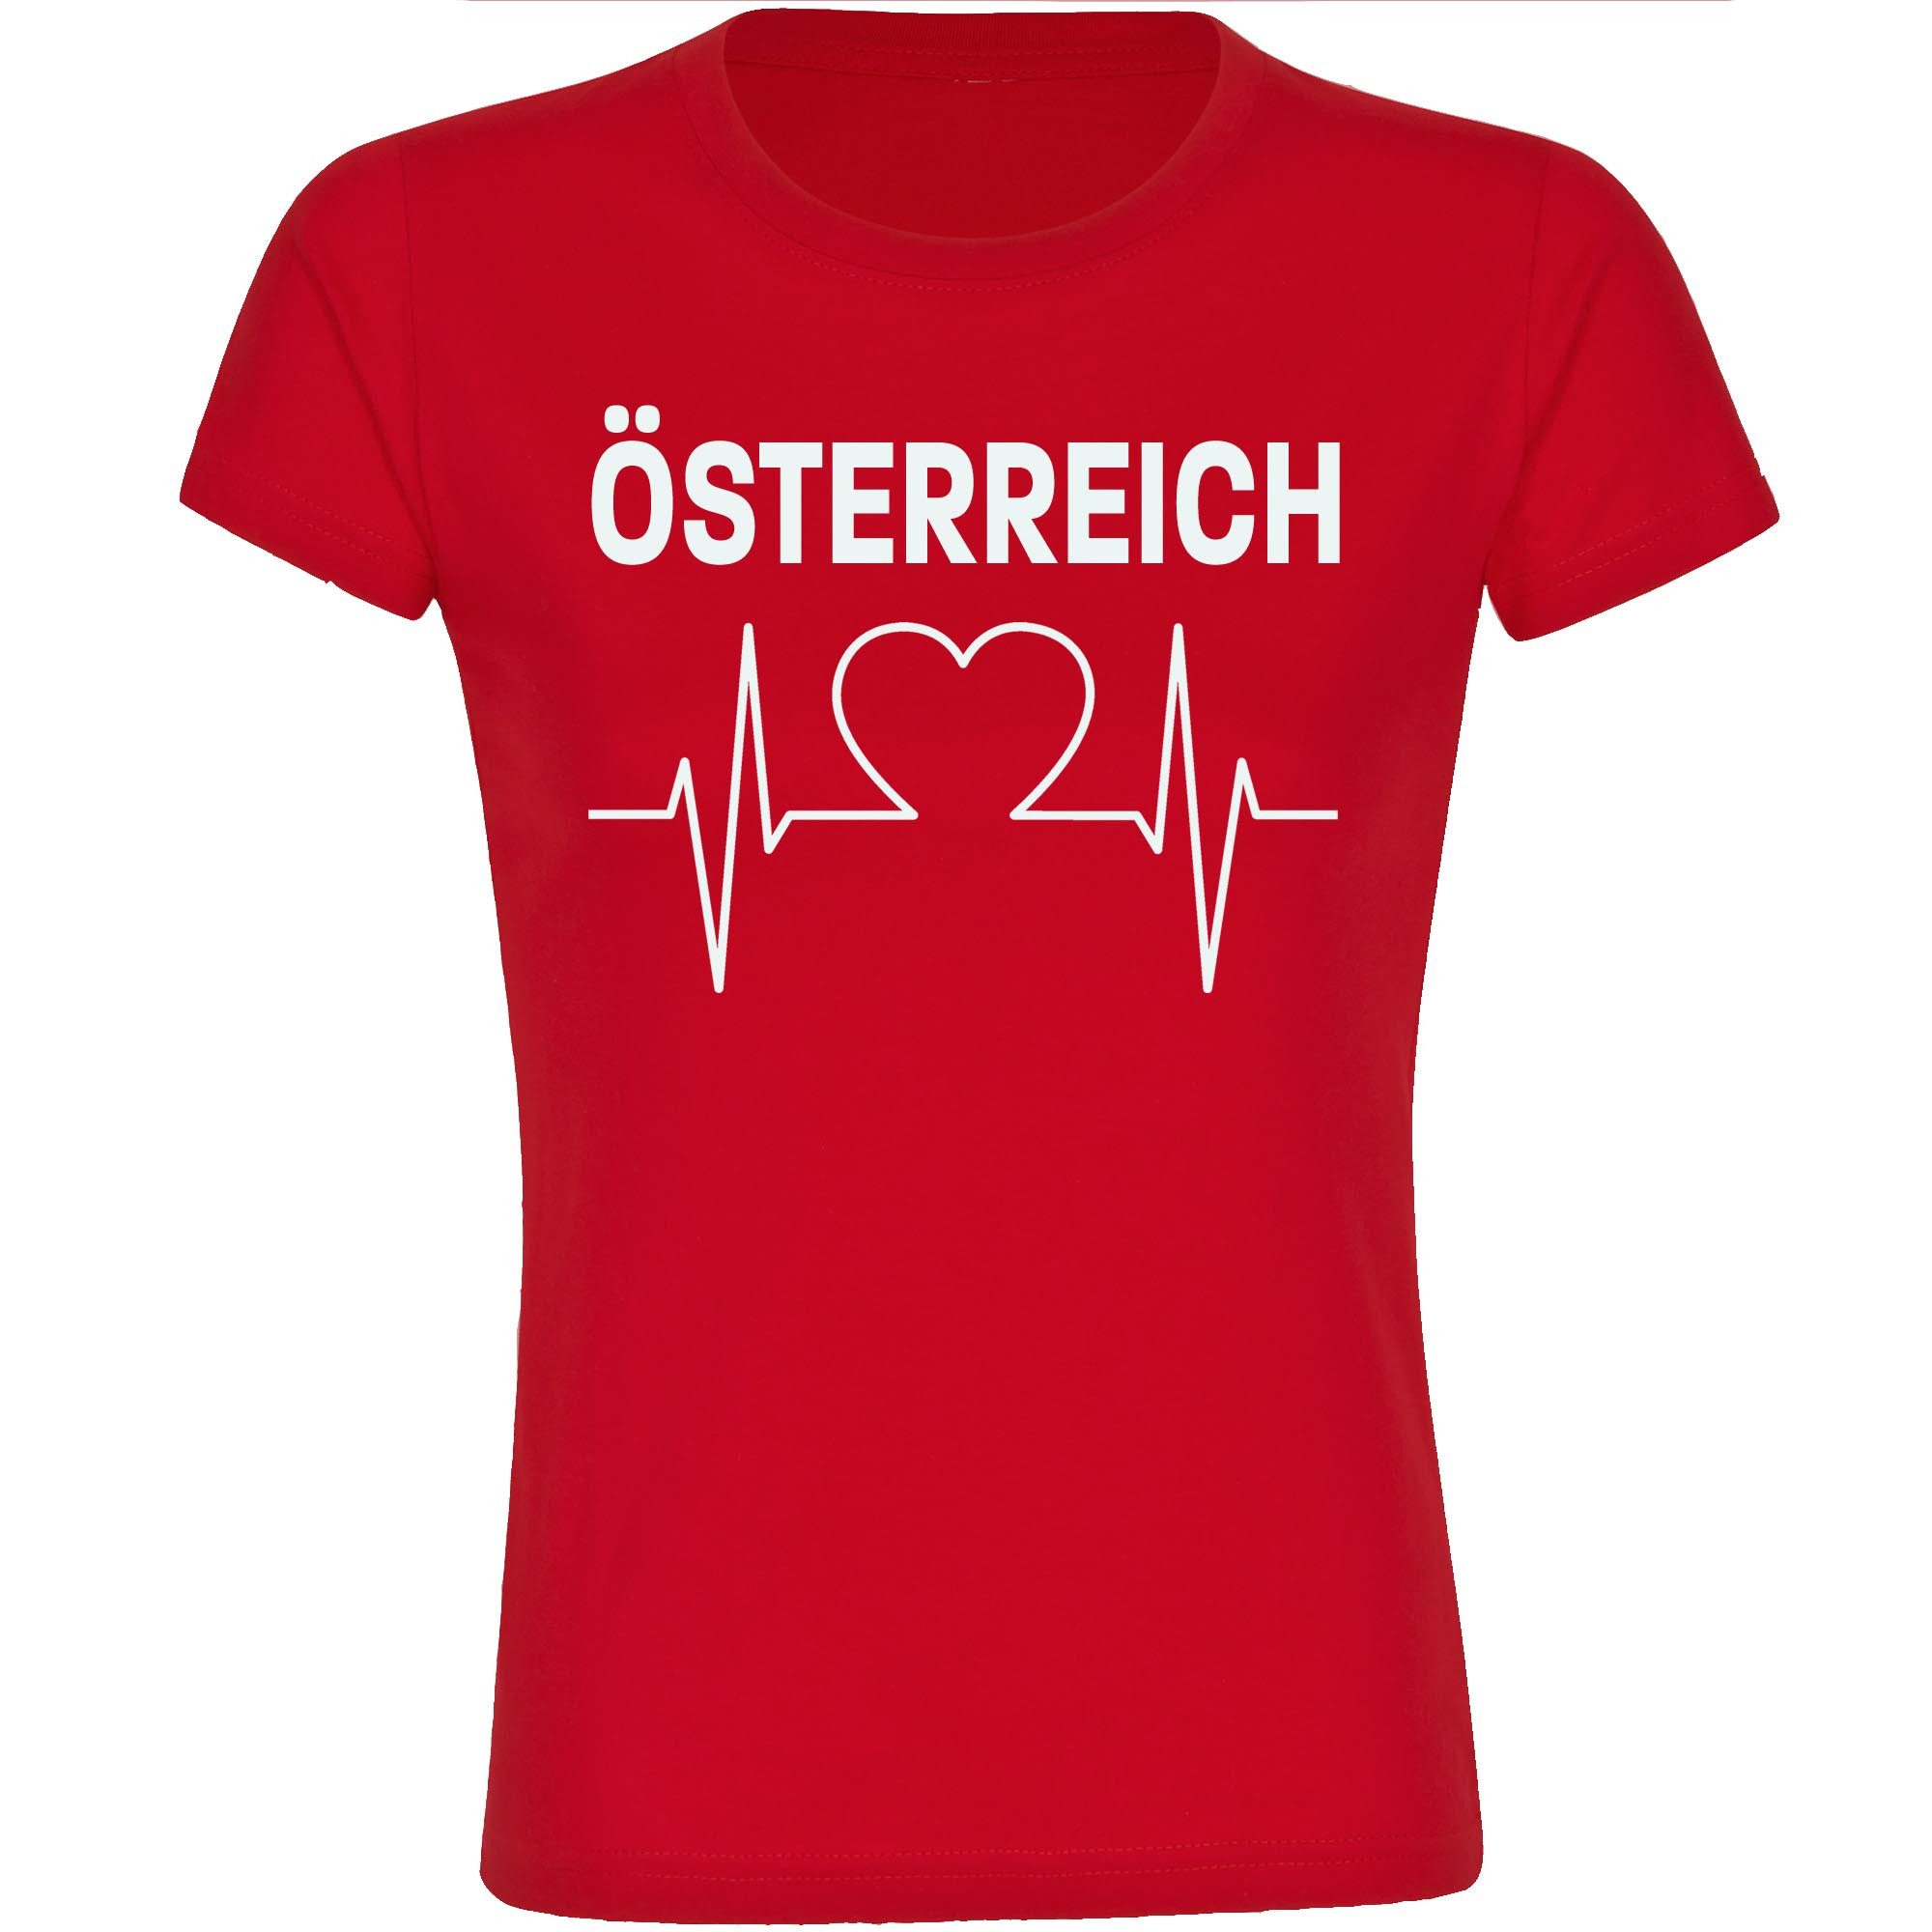 multifanshop T-Shirt Damen Österreich - Herzschlag - Frauen